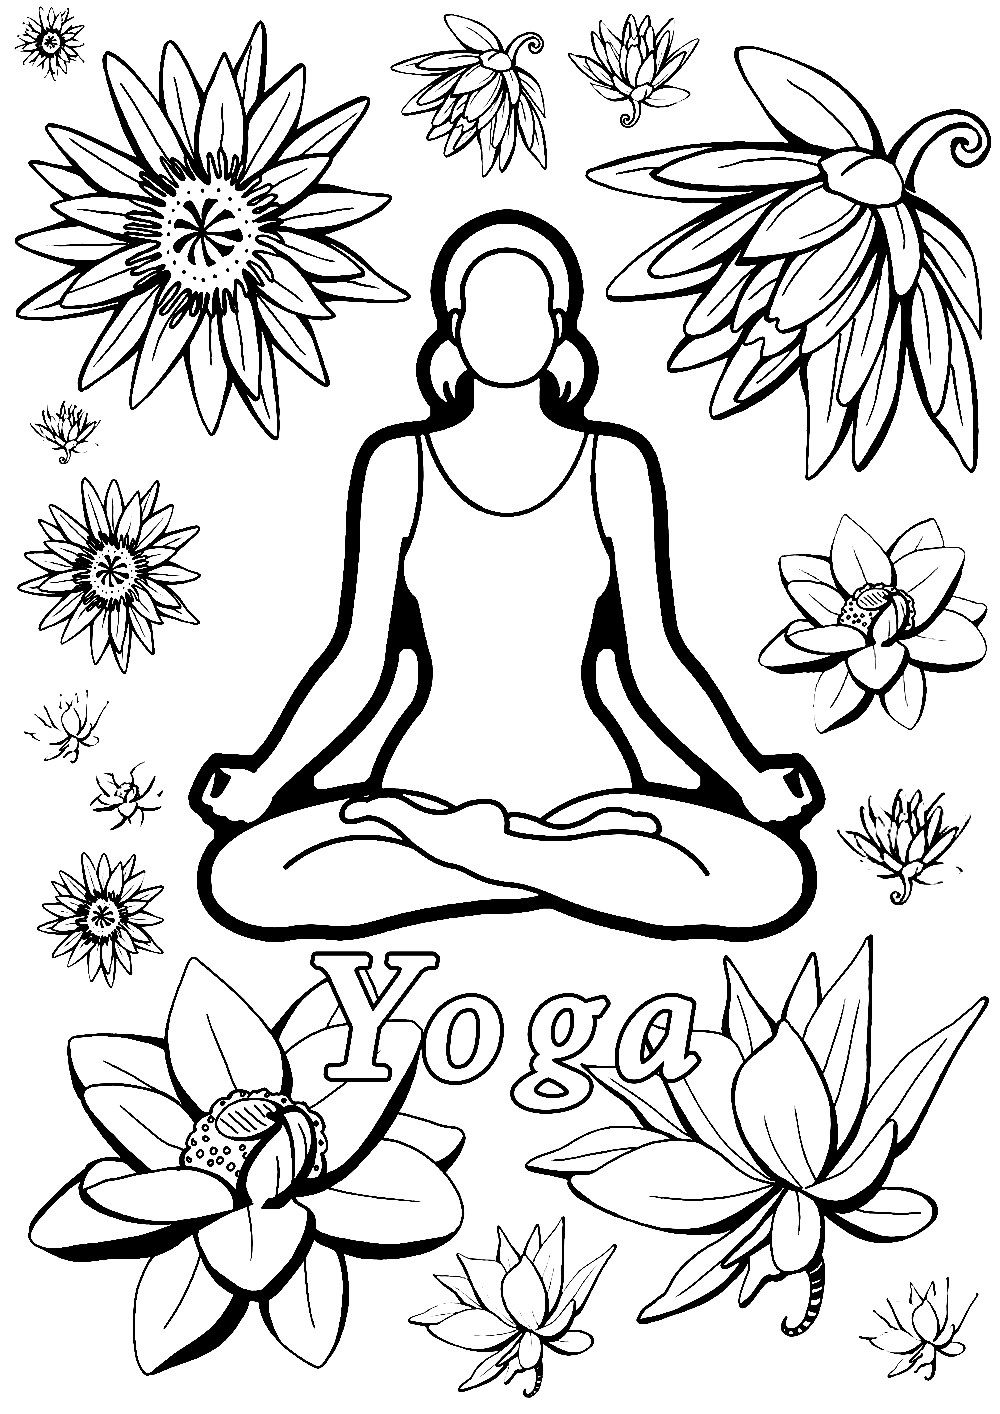 Yoga libre de yoga